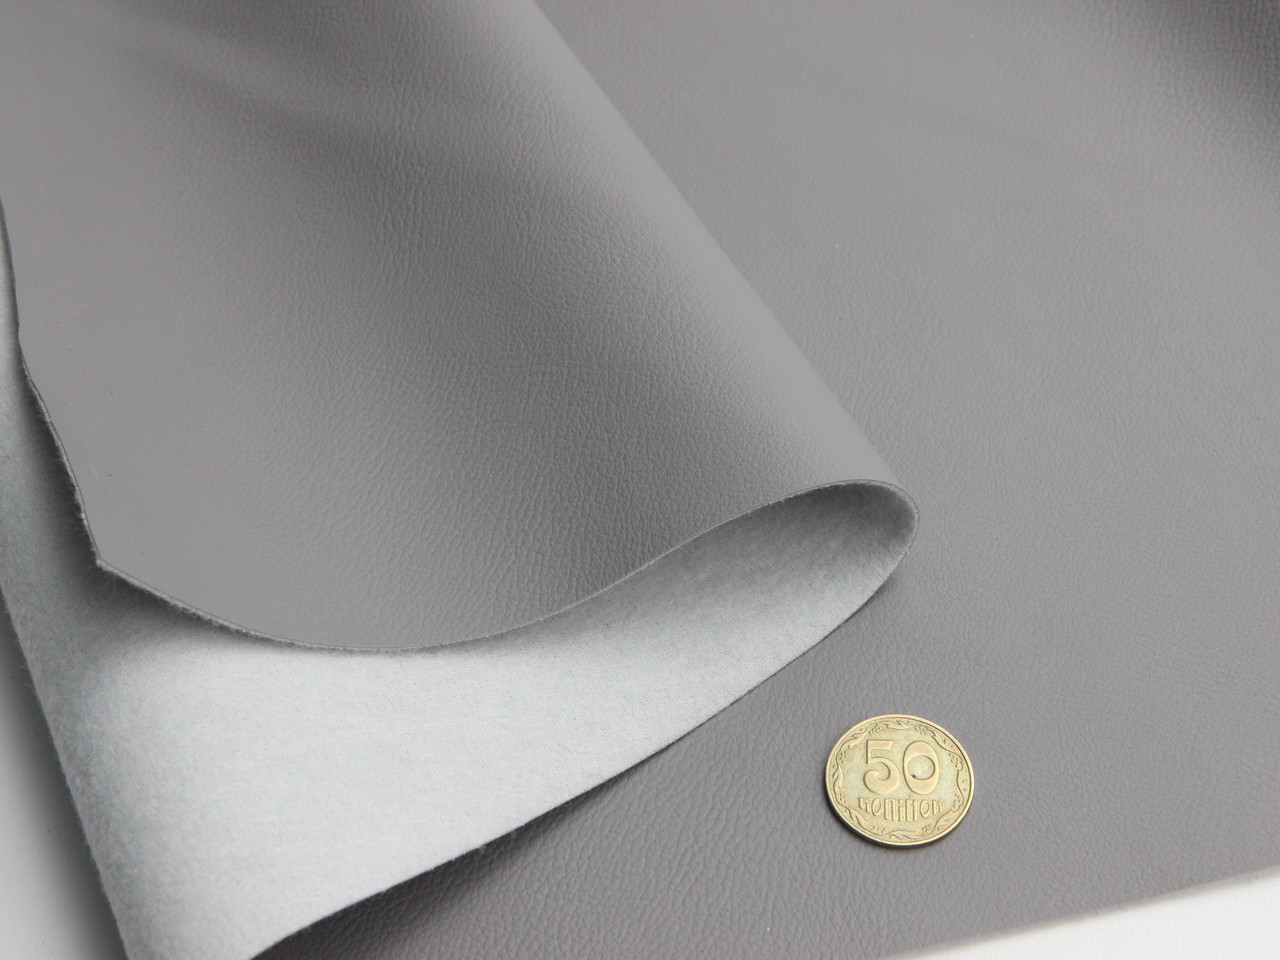 Биэластик тягучий | серый Maldive 955 для перетяжки дверных карт, стоек, airbag и вставок, ширина 1.40м детальная фотка